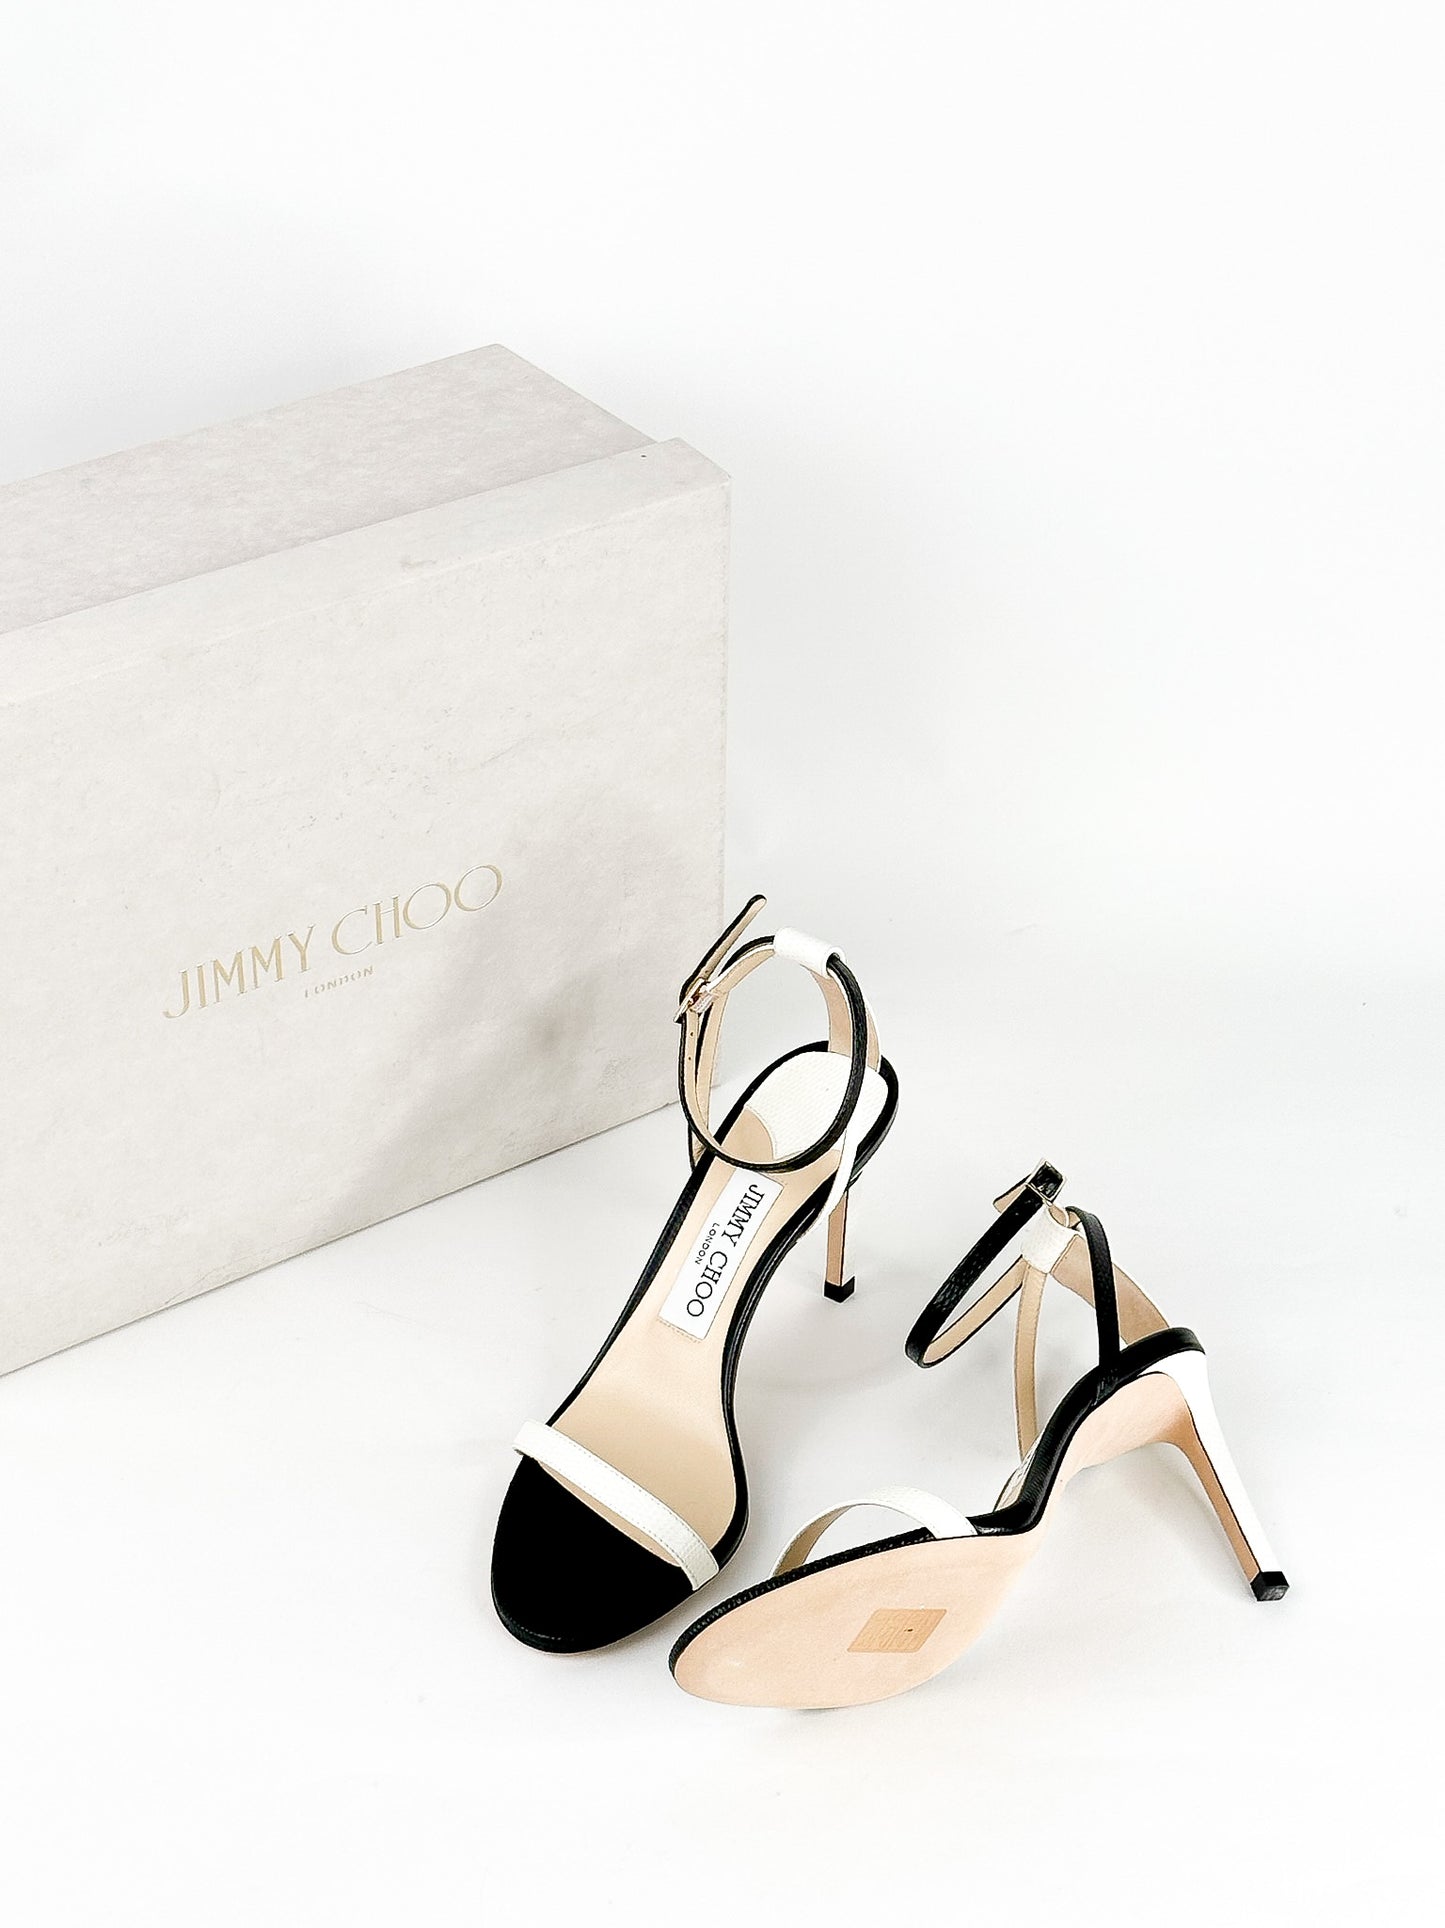 Jimmy Choo Minny Stiletto Sandals Size 36 1/2